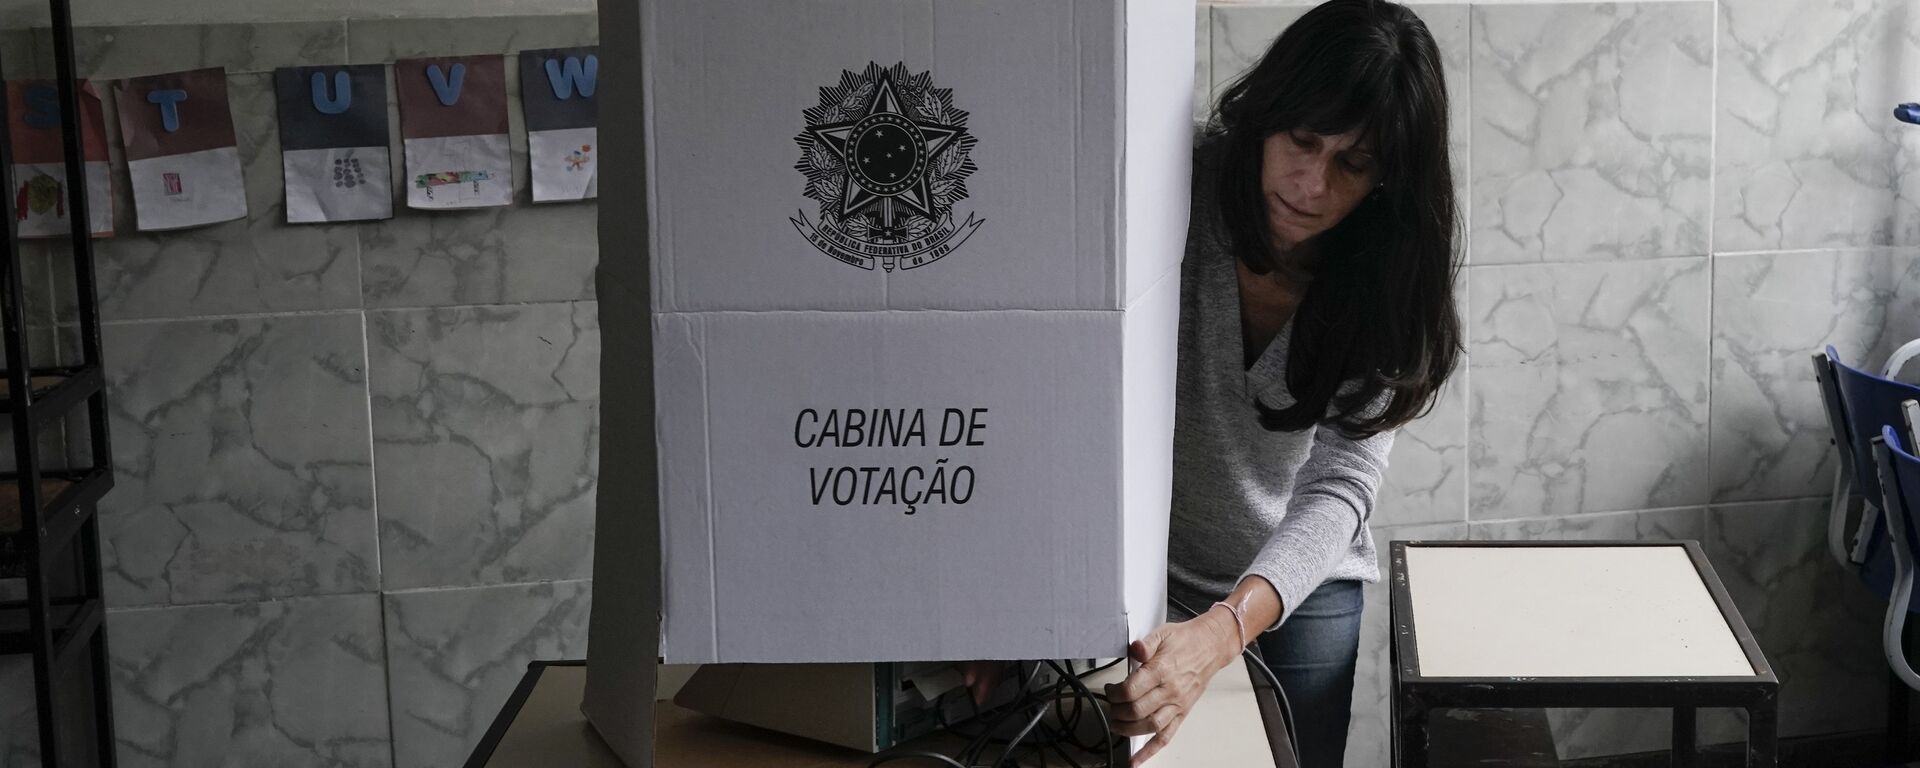 Elecciones presidenciales en Brasil - Sputnik Mundo, 1920, 15.07.2022